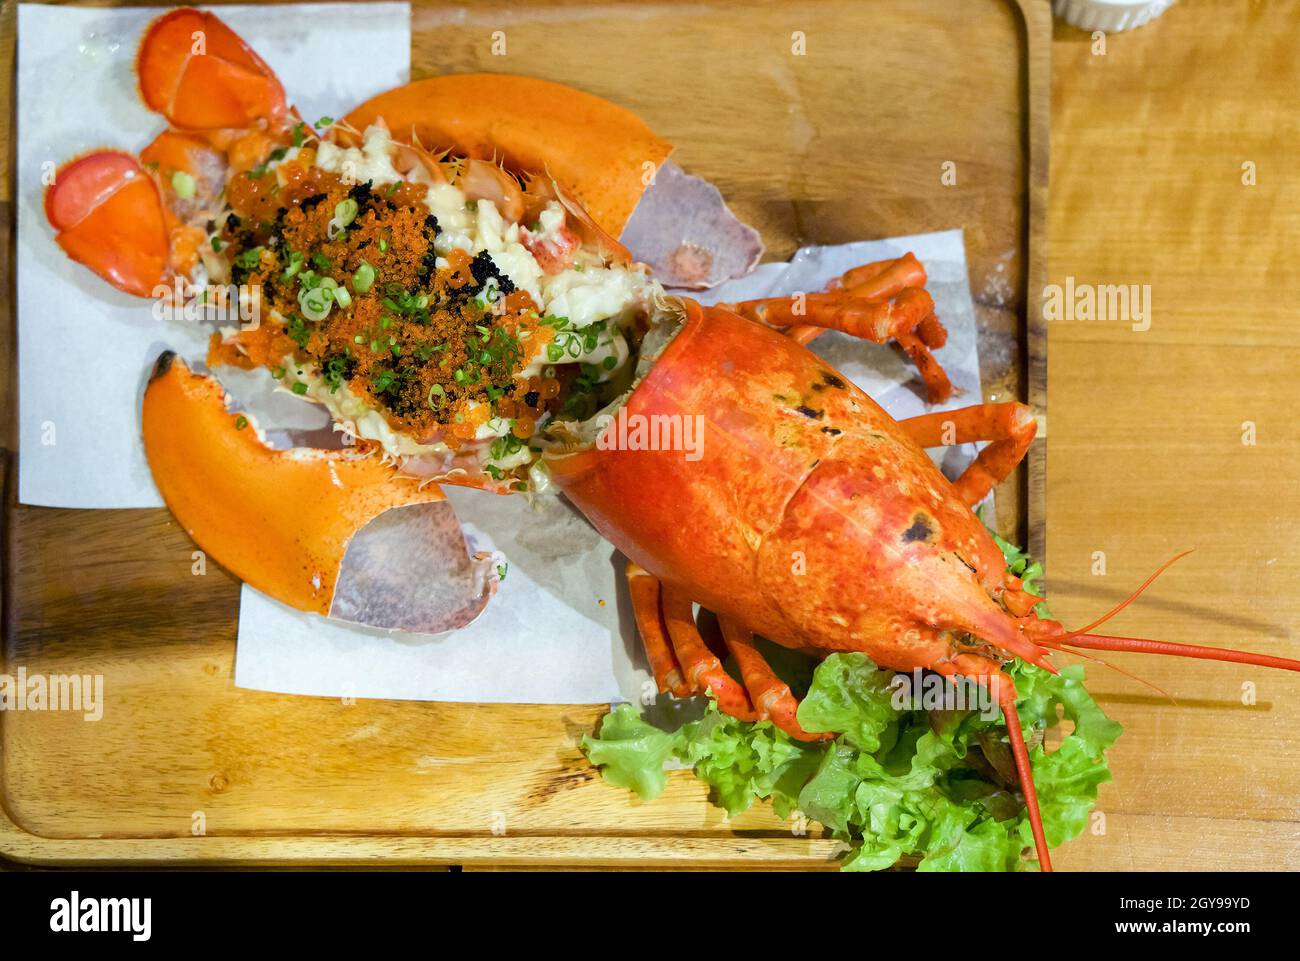 Cremoso Lobster Thermidor, che solleva i sapori della carne di aragosta con brandy e formaggio gratinato. Aggiunto tobiko, Ikura roe, salsa di soia e wasabi. Giappone Foto Stock